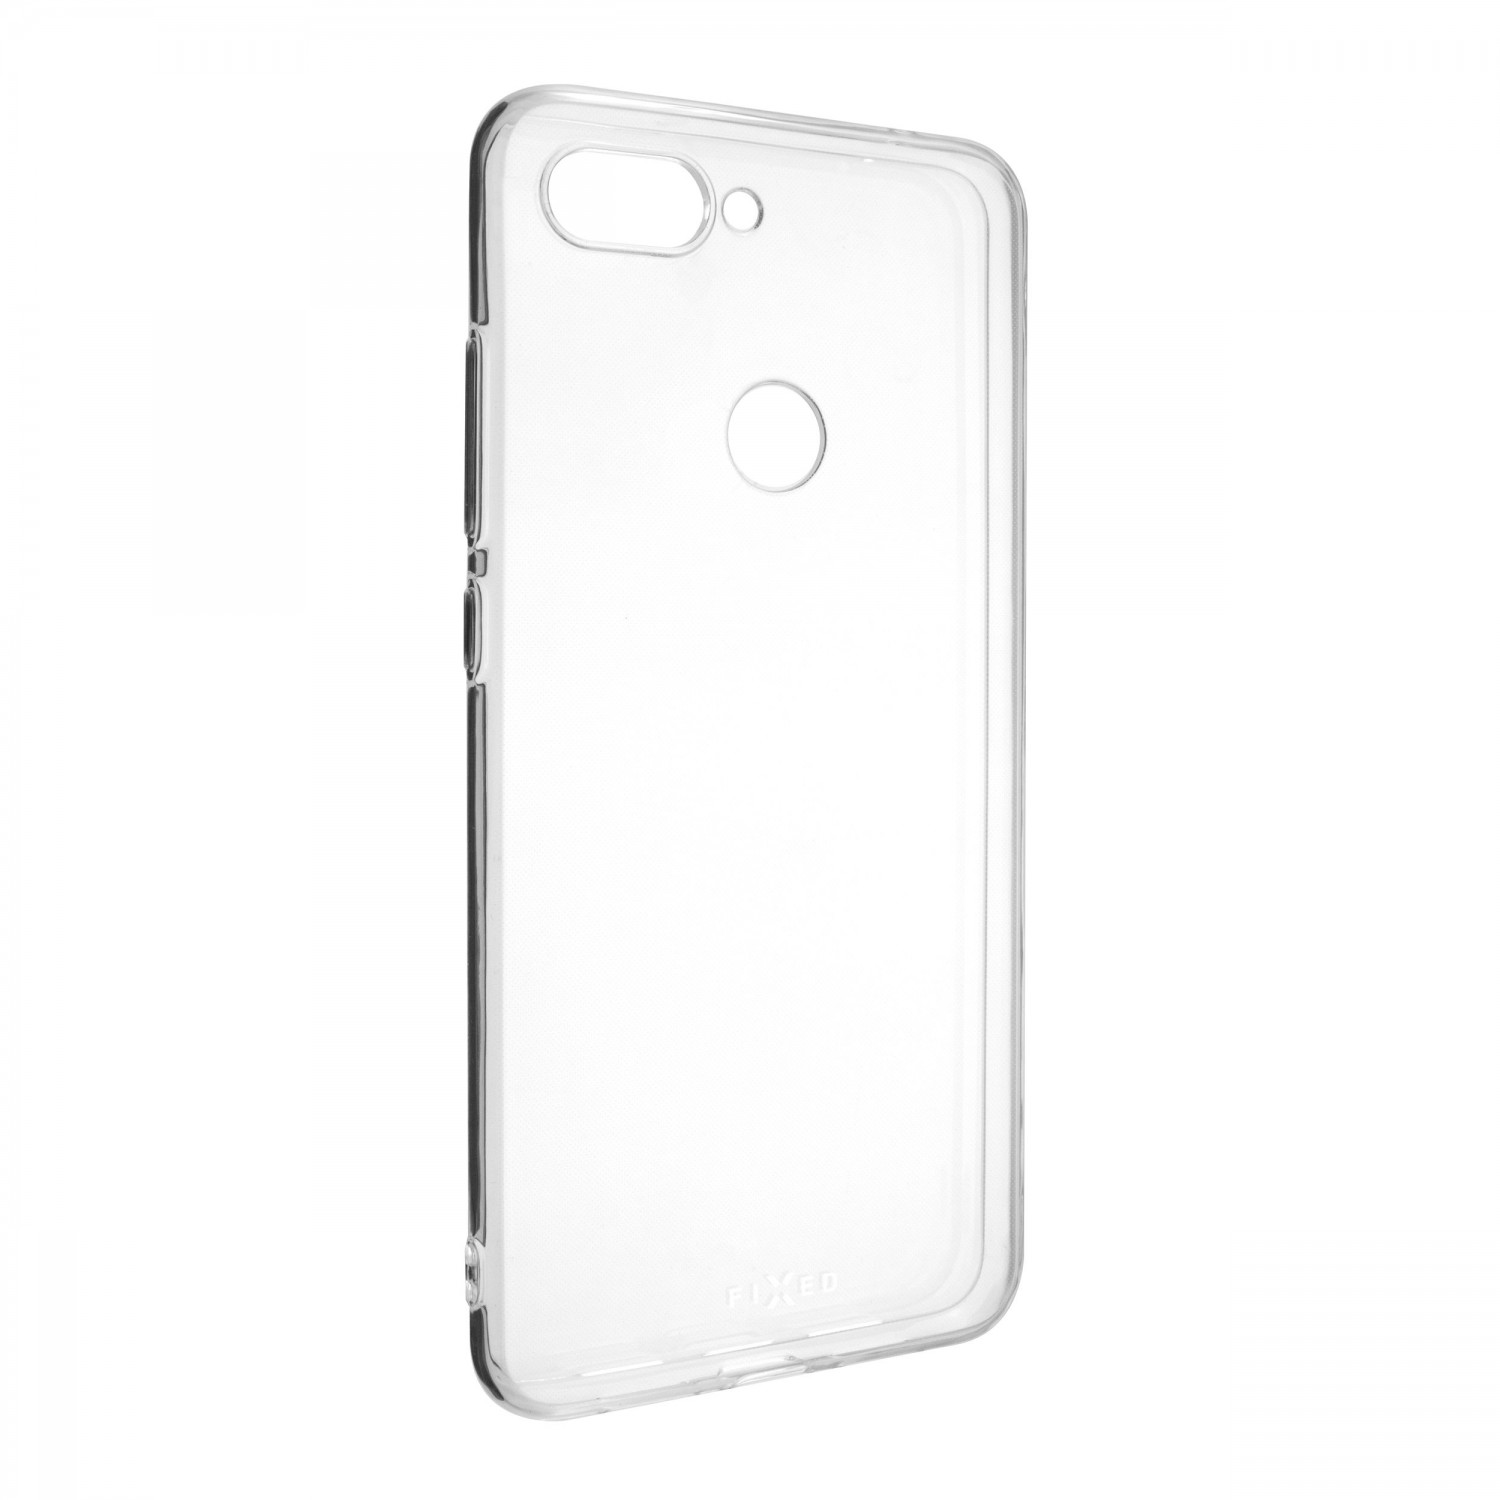 Ultratenké silikonové pouzdro FIXED Skin pro Xiaomi Mi8 Lite, transparentní